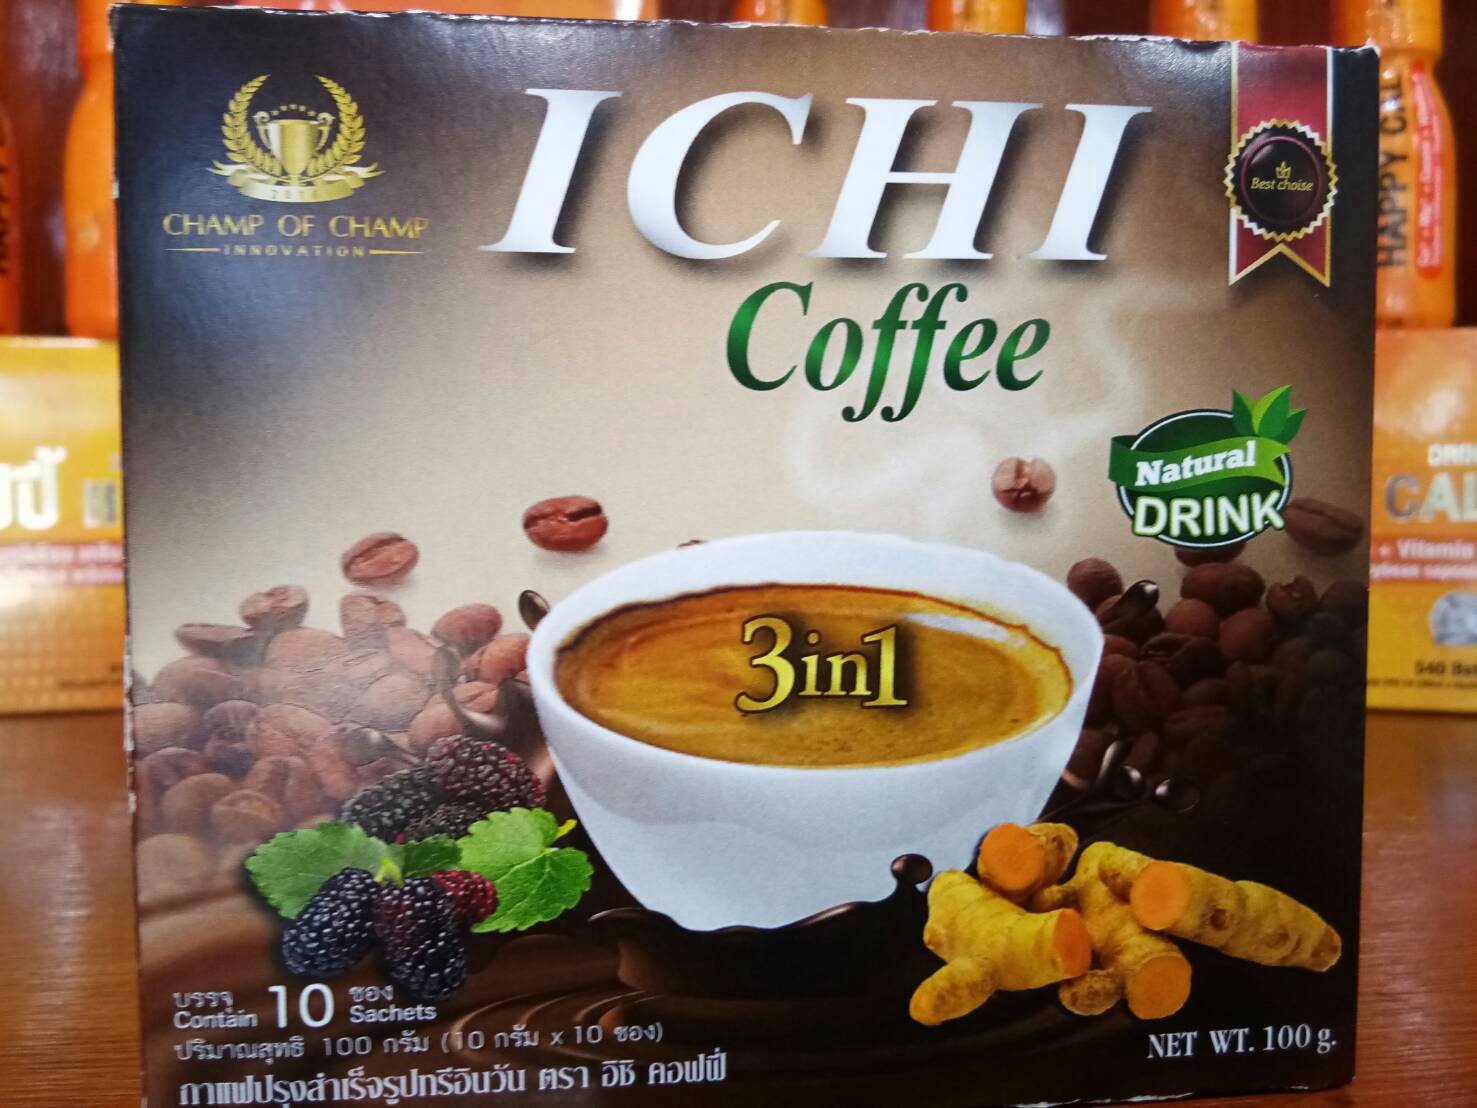 ICHI COFFEE กาแฟสมุนไพร เพื่ออนามัยแห่งผิวพรรณ พร้อมเสริฟได้ทุกที่ ทุกเวลาด้วยผงกาแฟจากเม็ดพันธุ์อาราบิก้า รูปที่ 1